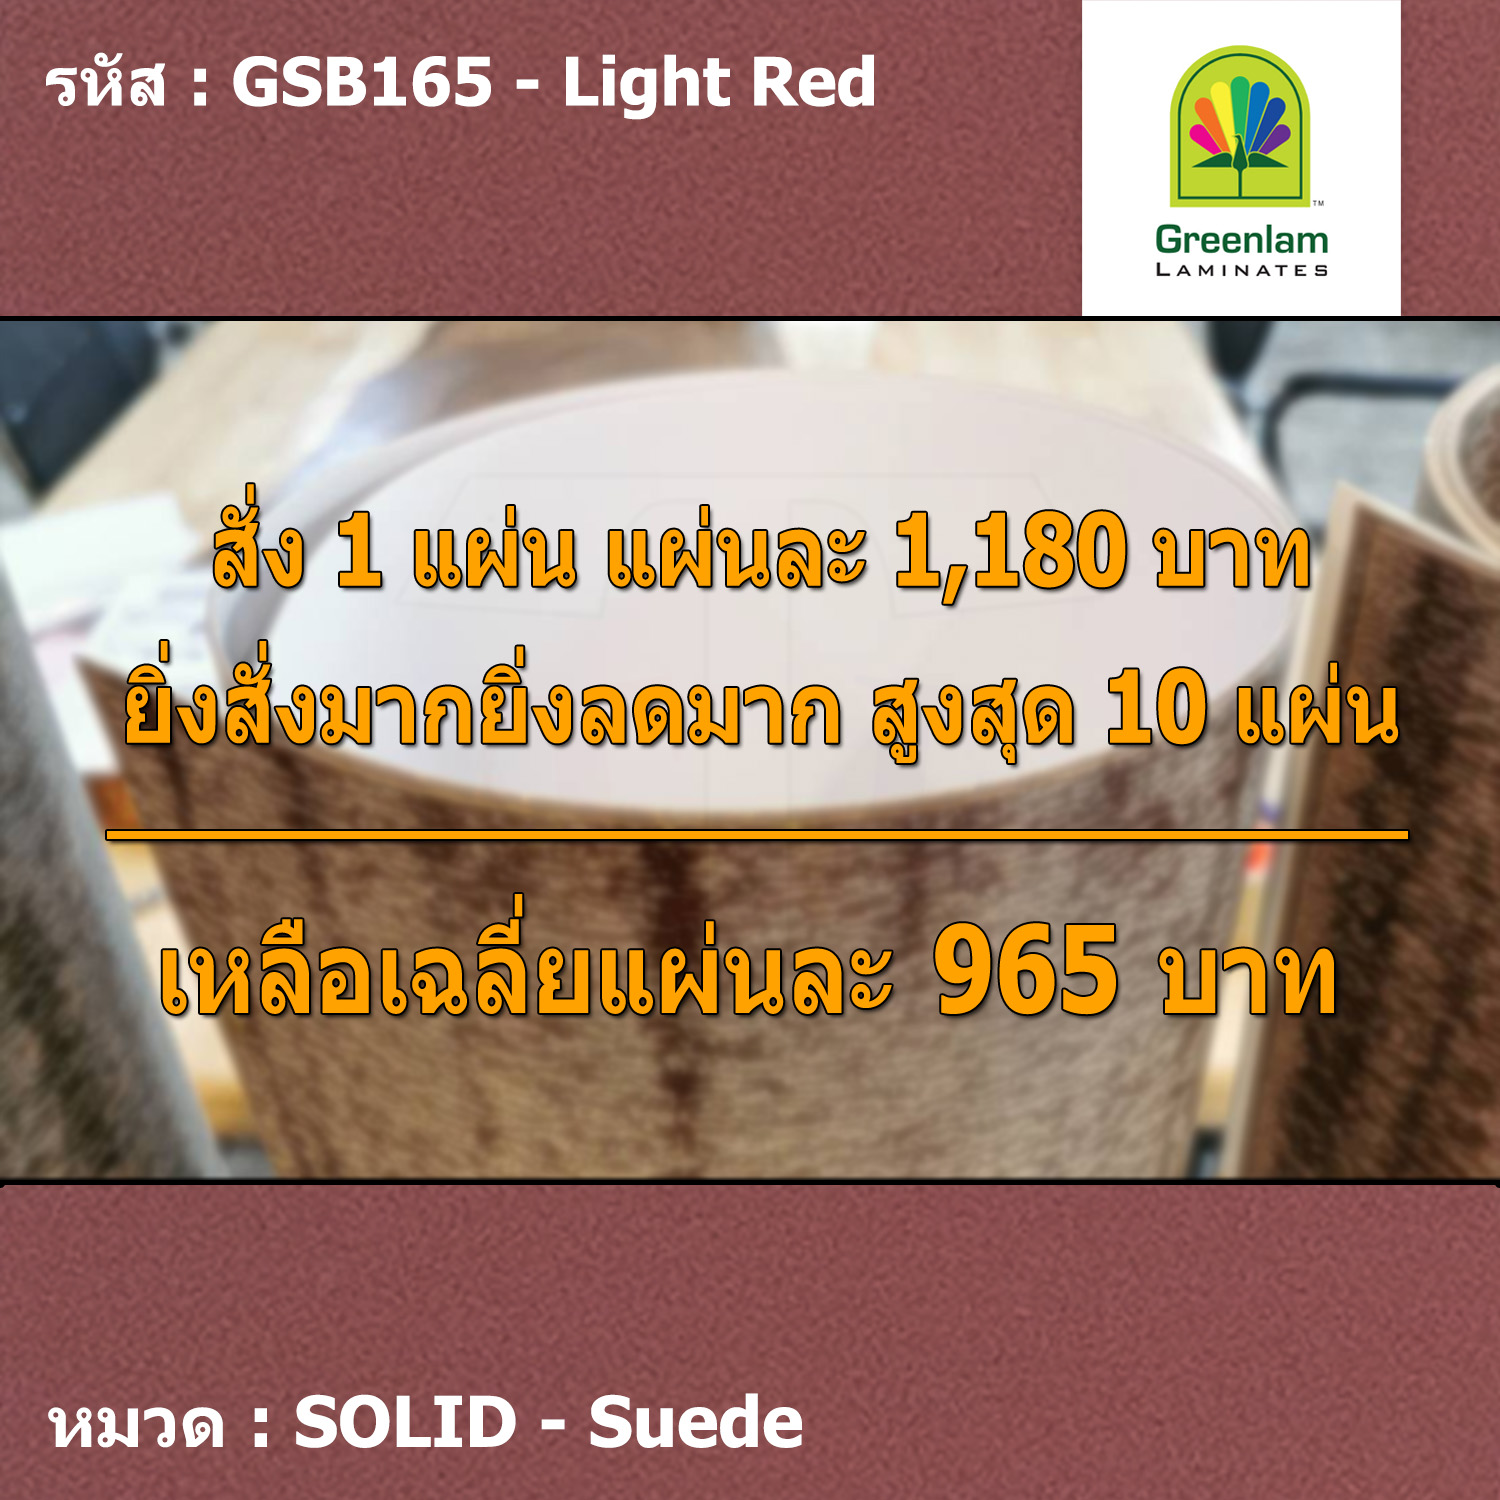 แผ่นโฟเมก้า แผ่นลามิเนต ยี่ห้อ Greenlam สีแดงอ่อน รหัส GSB165 Light Red พื้นผิวลาย Suede ขนาด 1220 x 2440 มม. หนา 0.80 มม. ใช้สำหรับงานตกแต่งภายใน งานปิดผิวเฟอร์นิเจอร์ ผนัง และอื่นๆ เพื่อเพิ่มความสวยงาม formica laminate GSB165